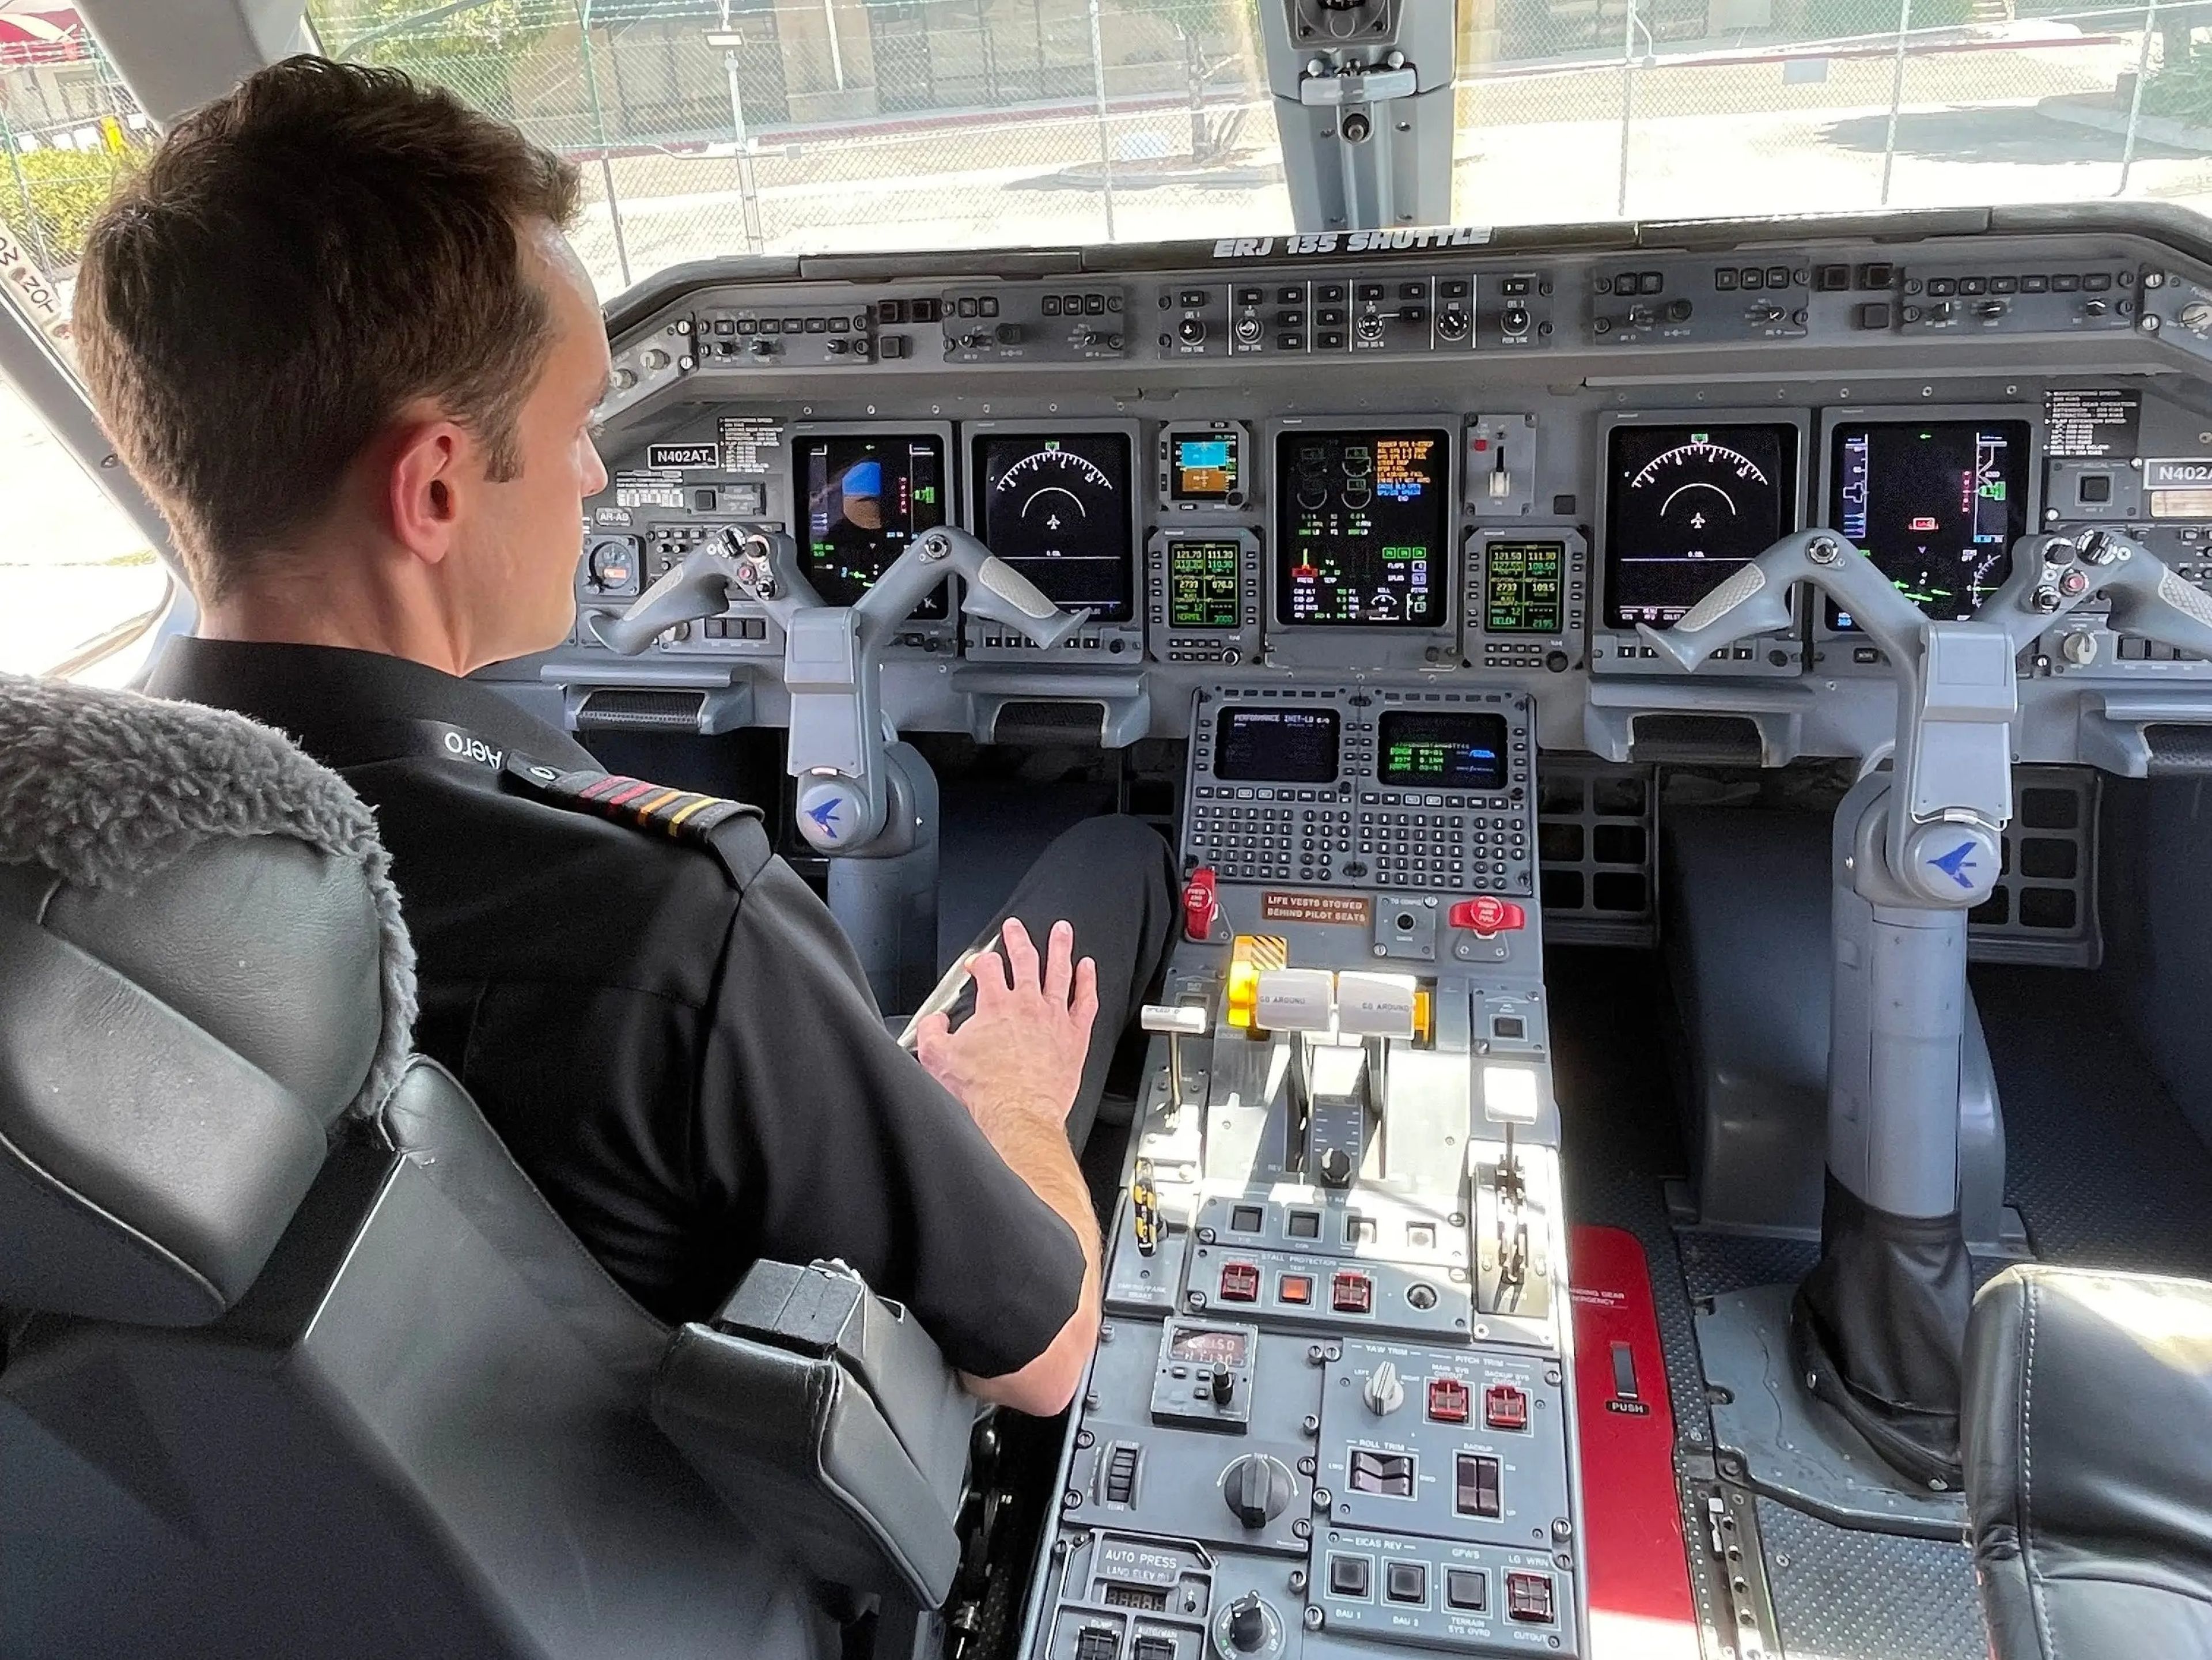 Captain Brent preparing to explain the cockpit’s features.